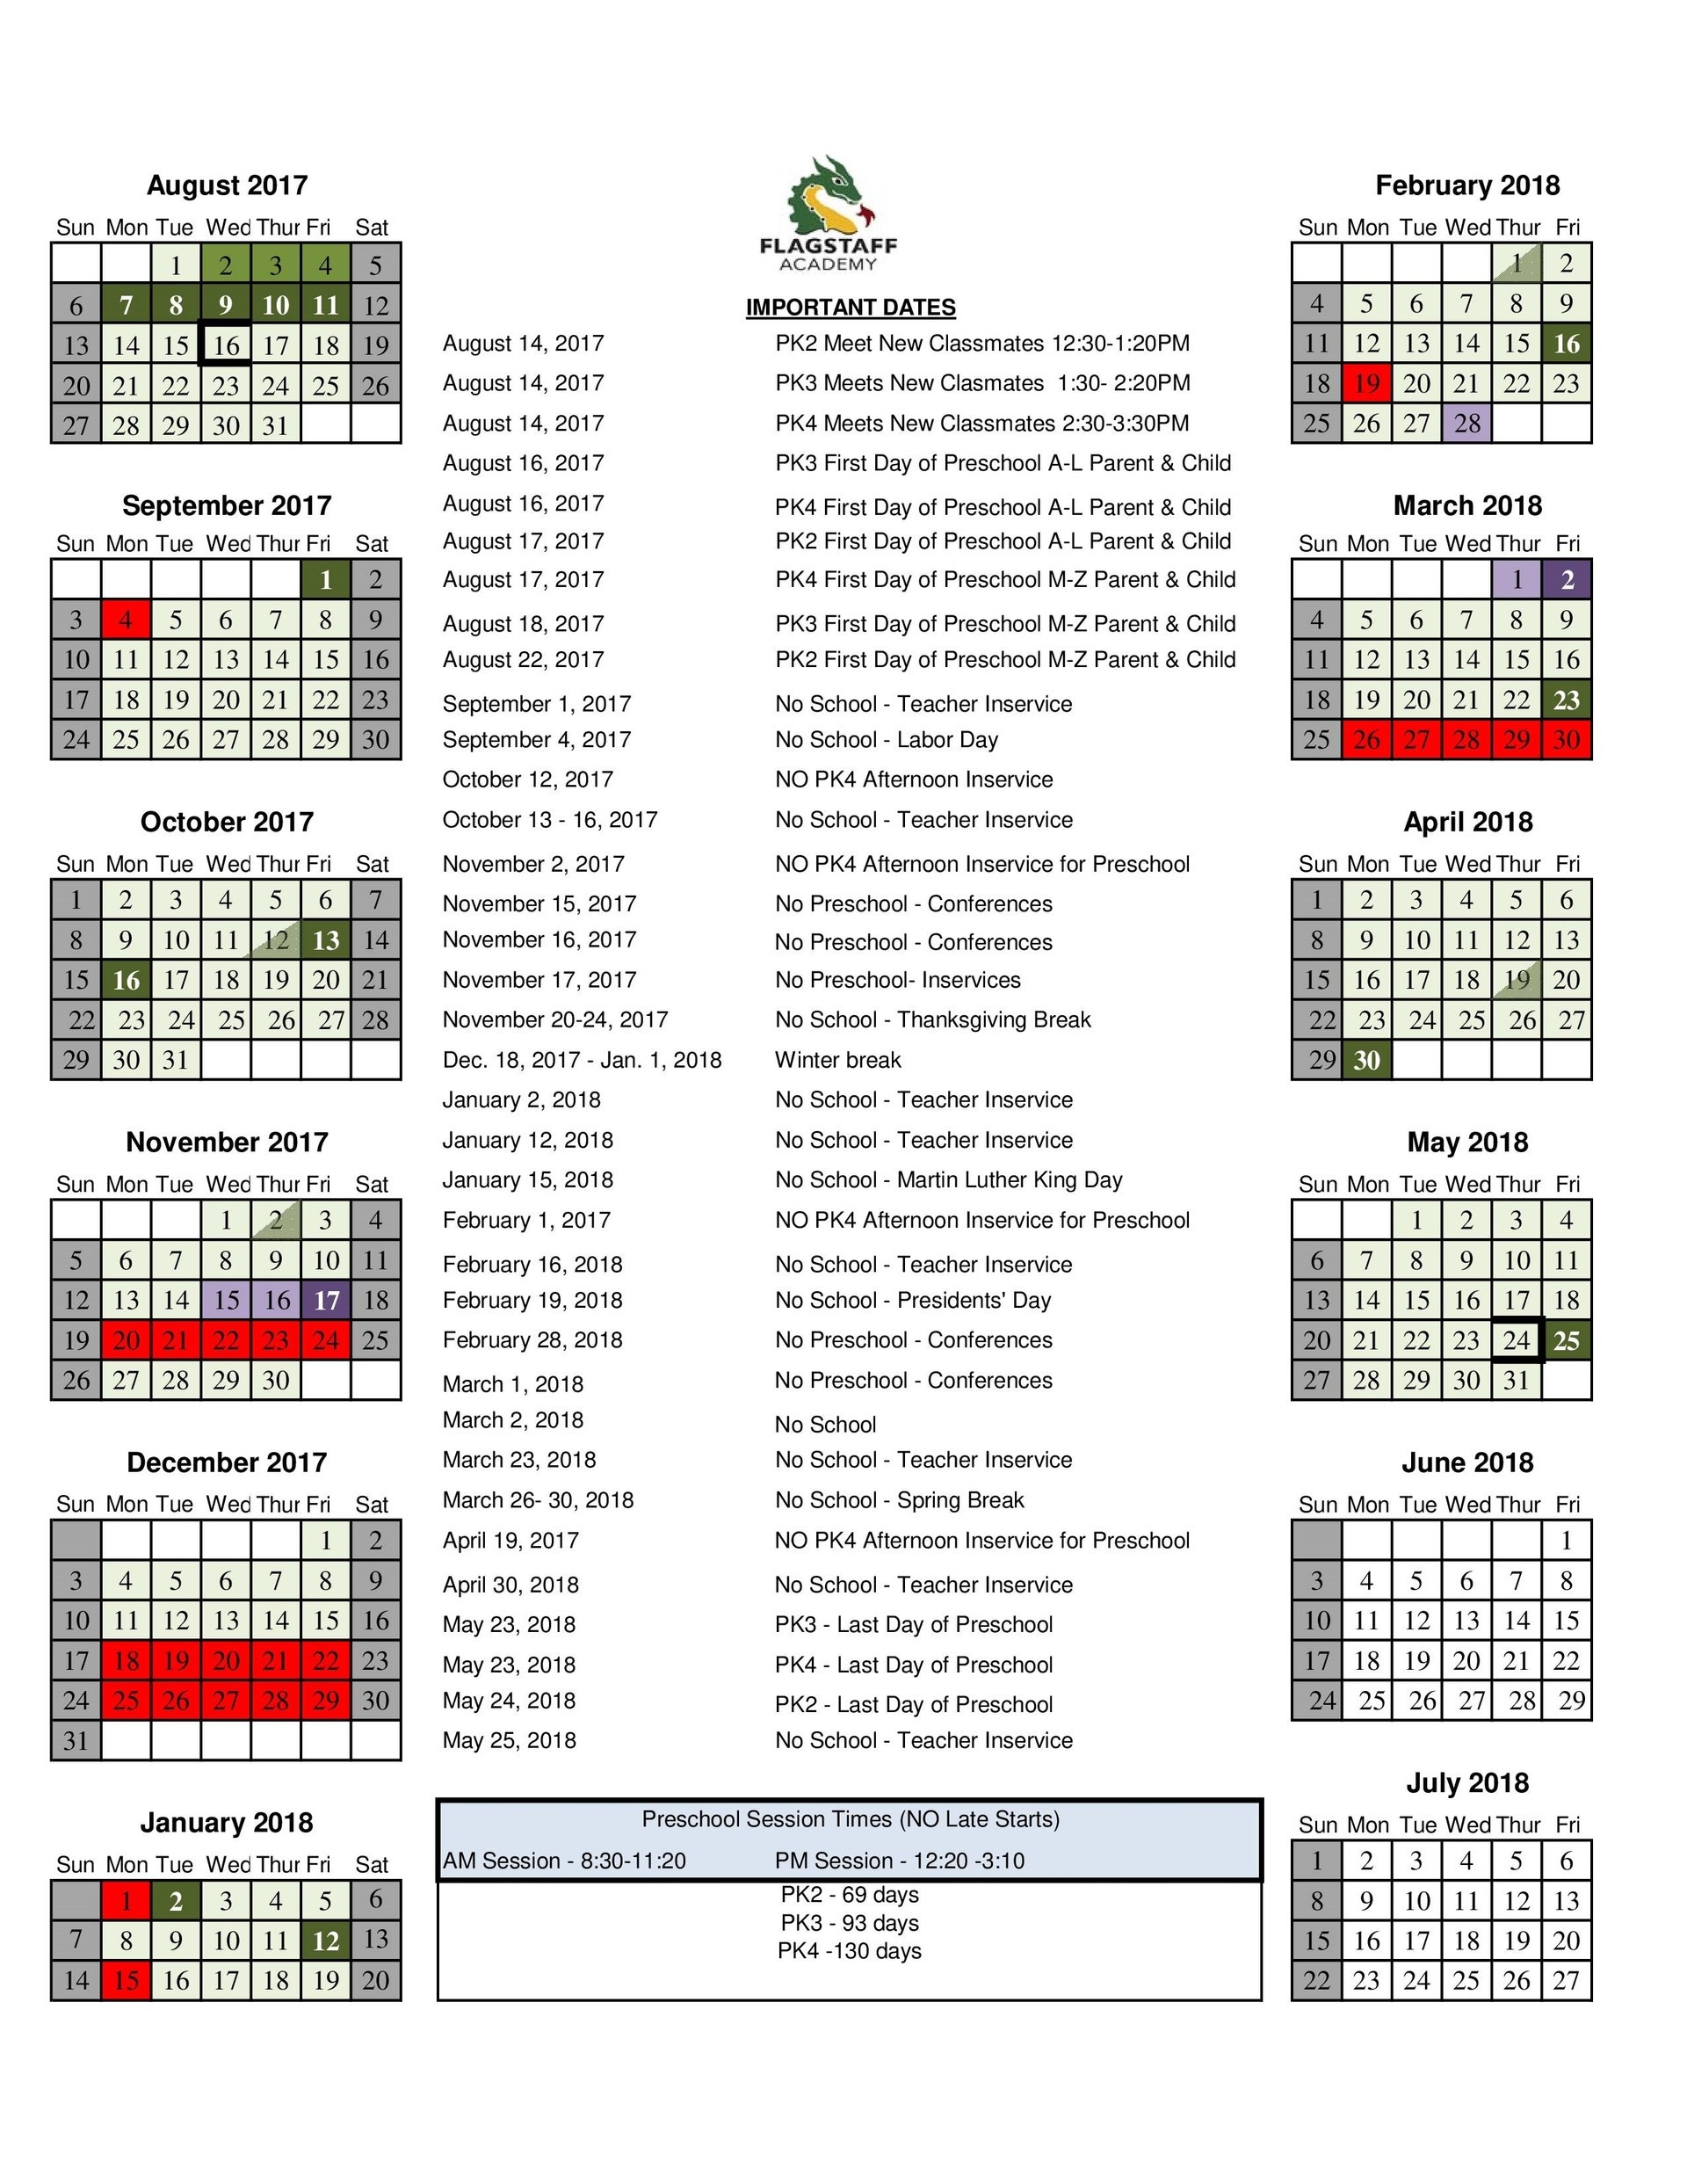 Brooklyn College Calendar Qualads